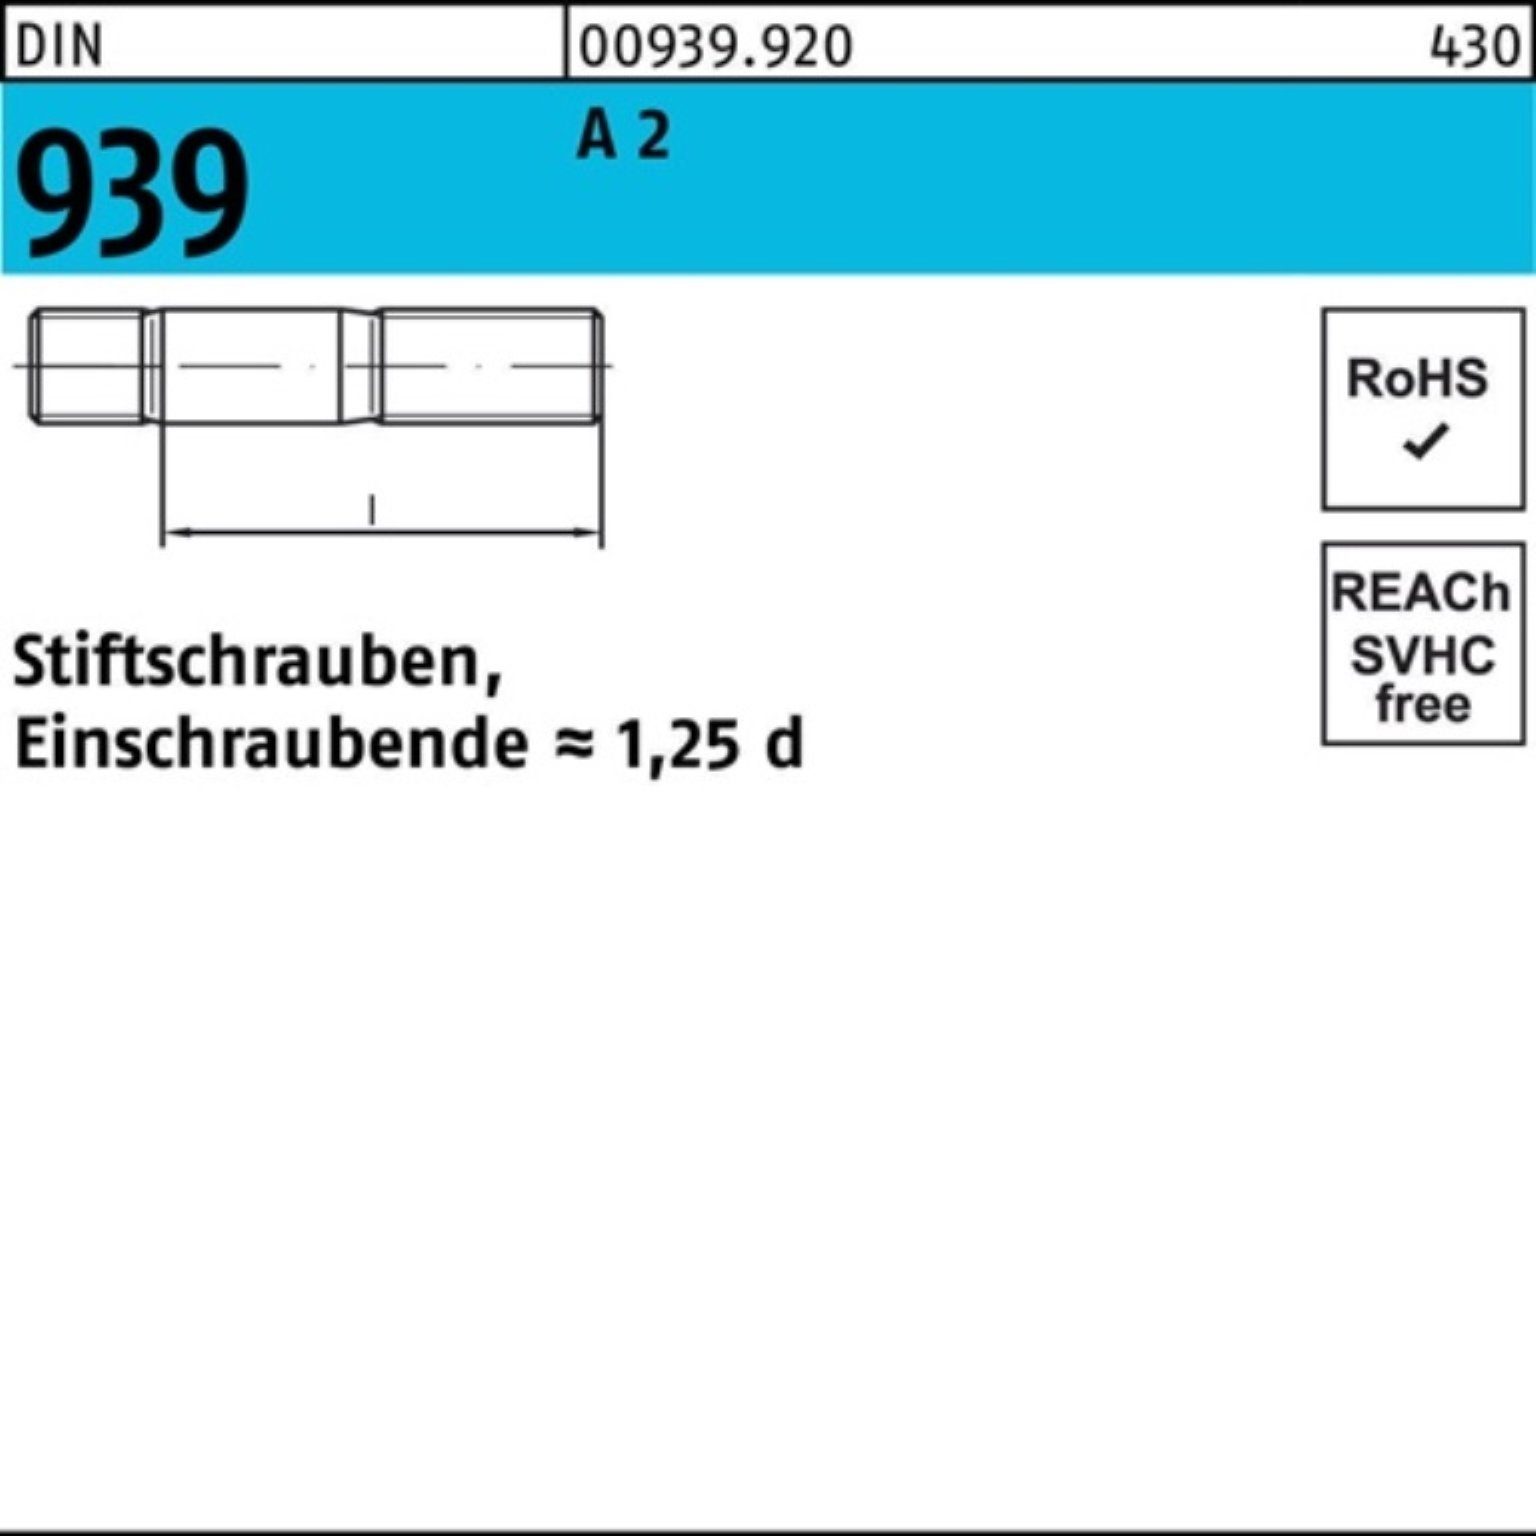 Reyher Stiftschraube 100er Pack Stiftschraube 1 2 S 939 DIN Einschraubende=1,25d A M16x 100